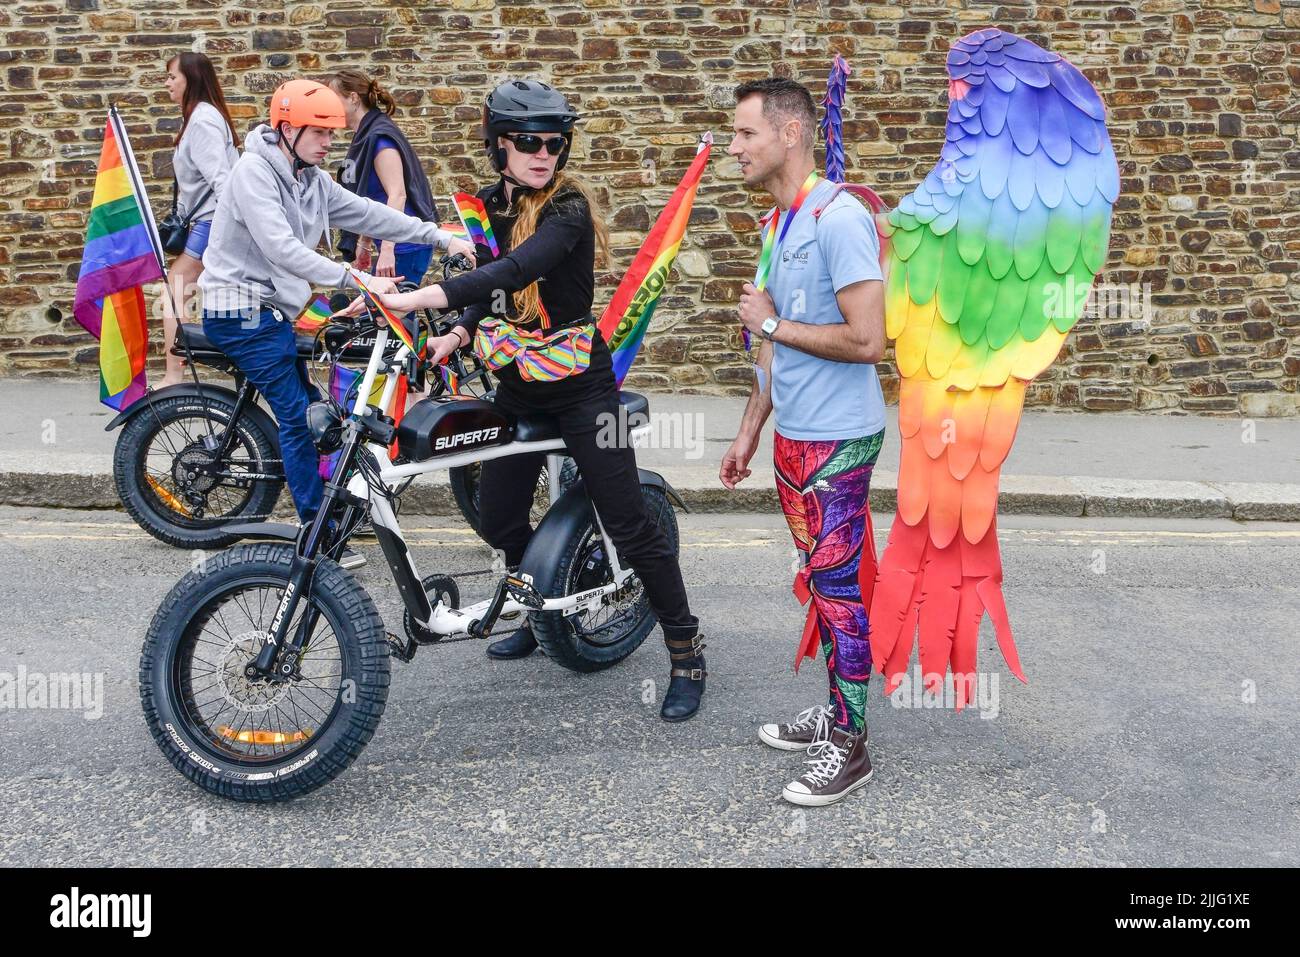 Los jinetes que usan bicicletas eléctricas Super 73 al inicio de la vibrante y colorida Cornwall se enorgullece del desfile de Orgullo en el centro de Newquay en el Reino Unido. Foto de stock